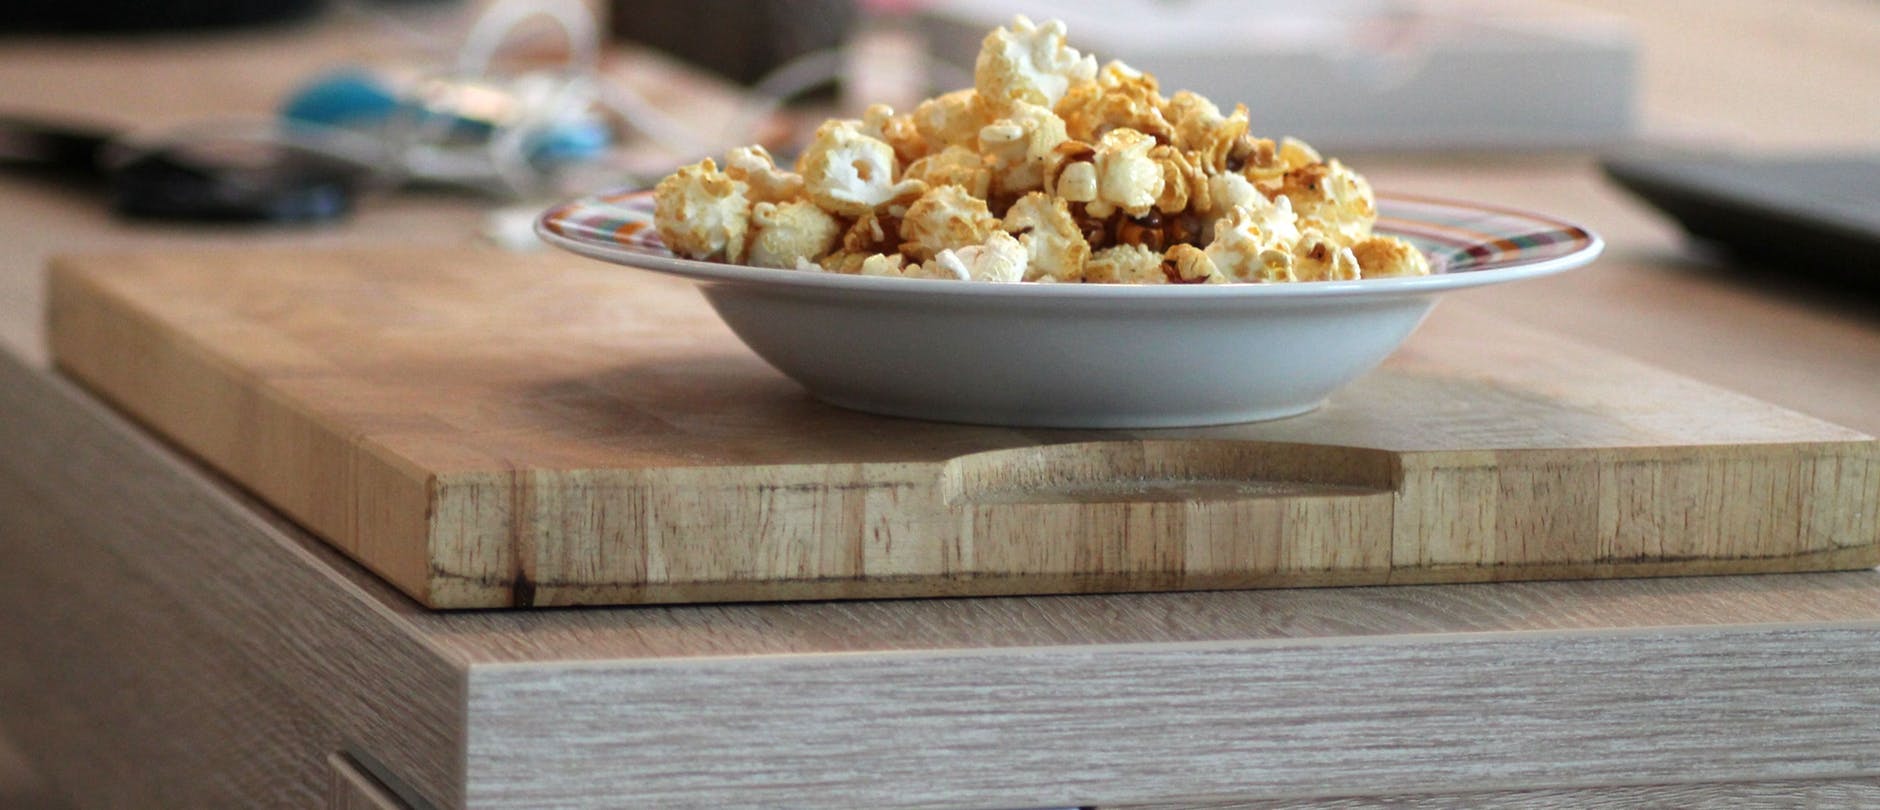 Είναι τα popcorn κατάλληλα για να χάσεις βάρος;